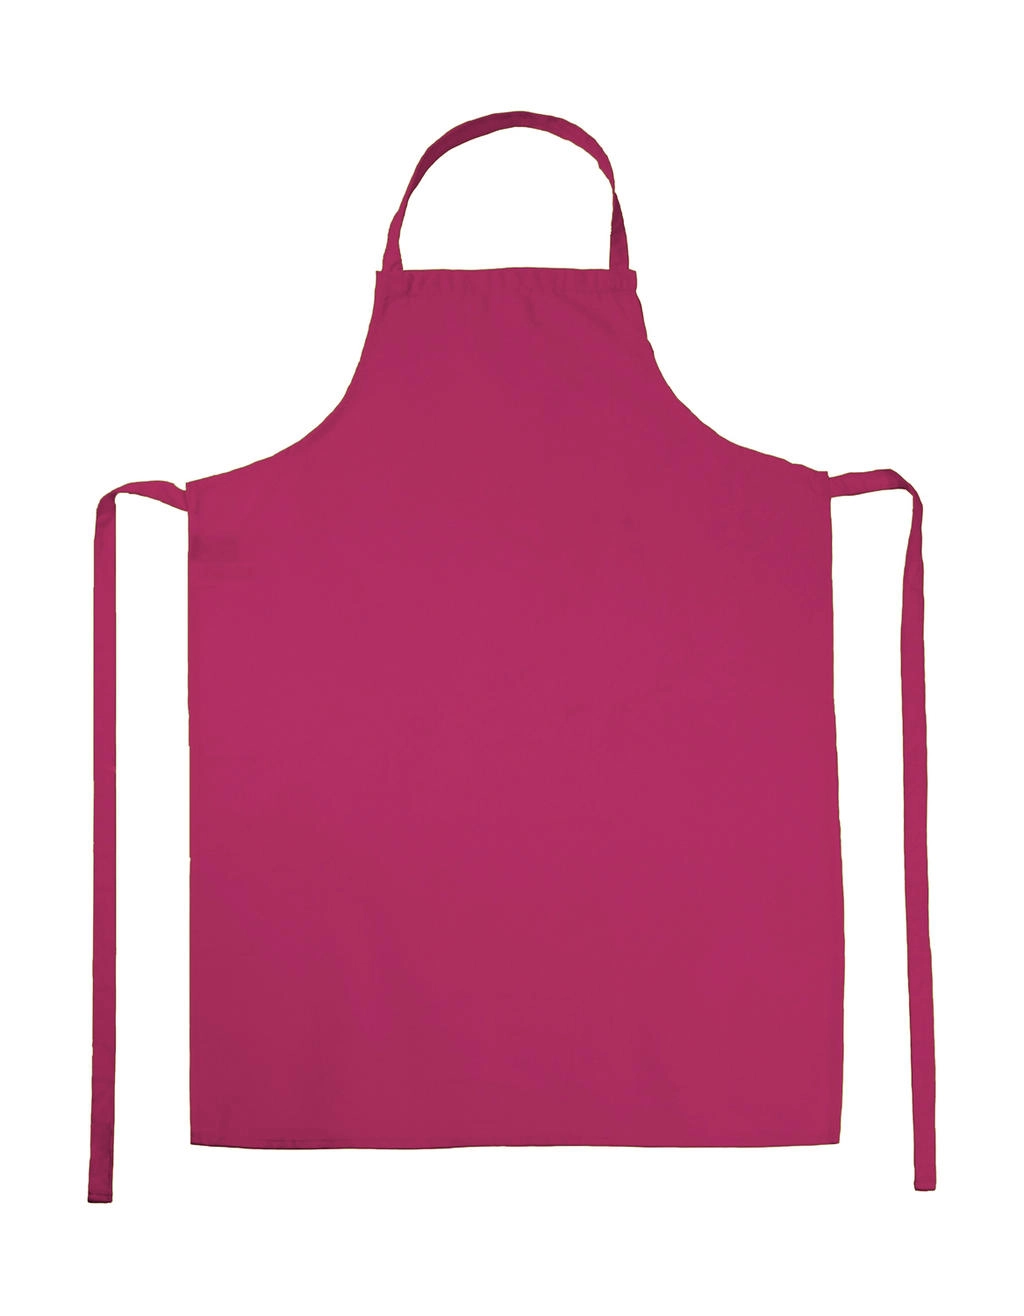 PARIS Bib Apron zum Besticken und Bedrucken in der Farbe Pink mit Ihren Logo, Schriftzug oder Motiv.